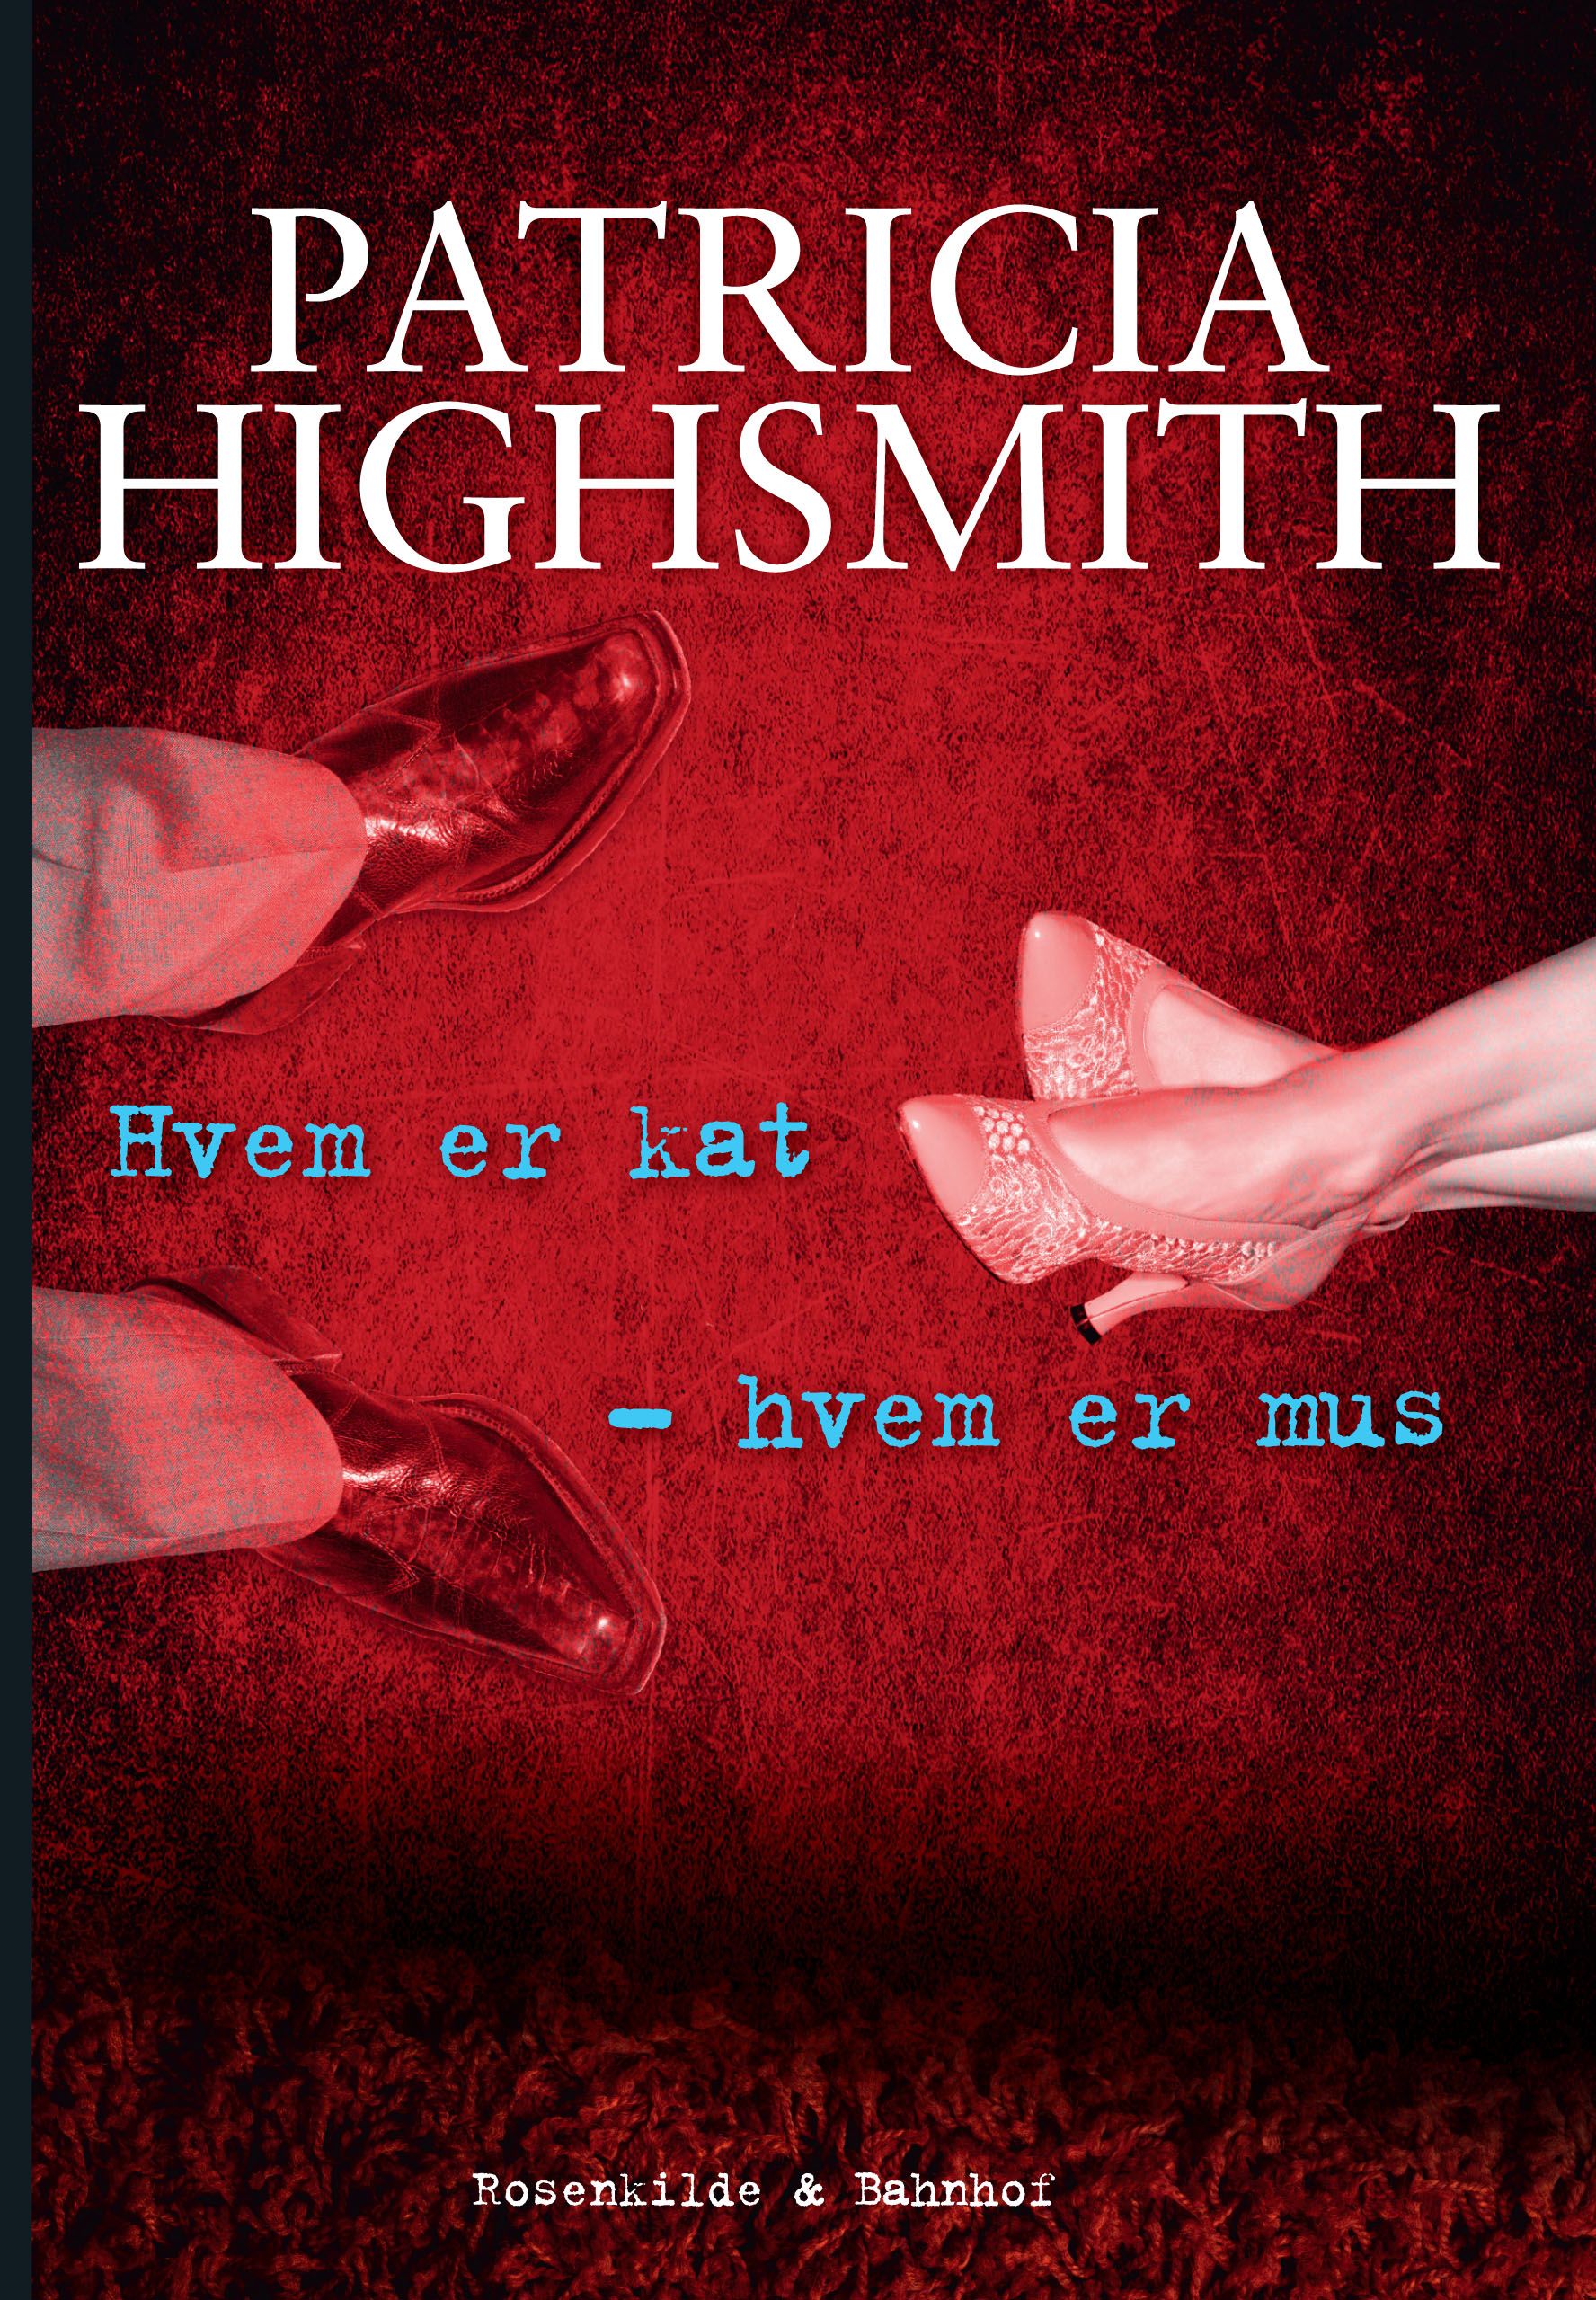 Hvem er kat - hvem er mus. En Patricia Highsmith krimi., e-bok av Patricia Highsmith